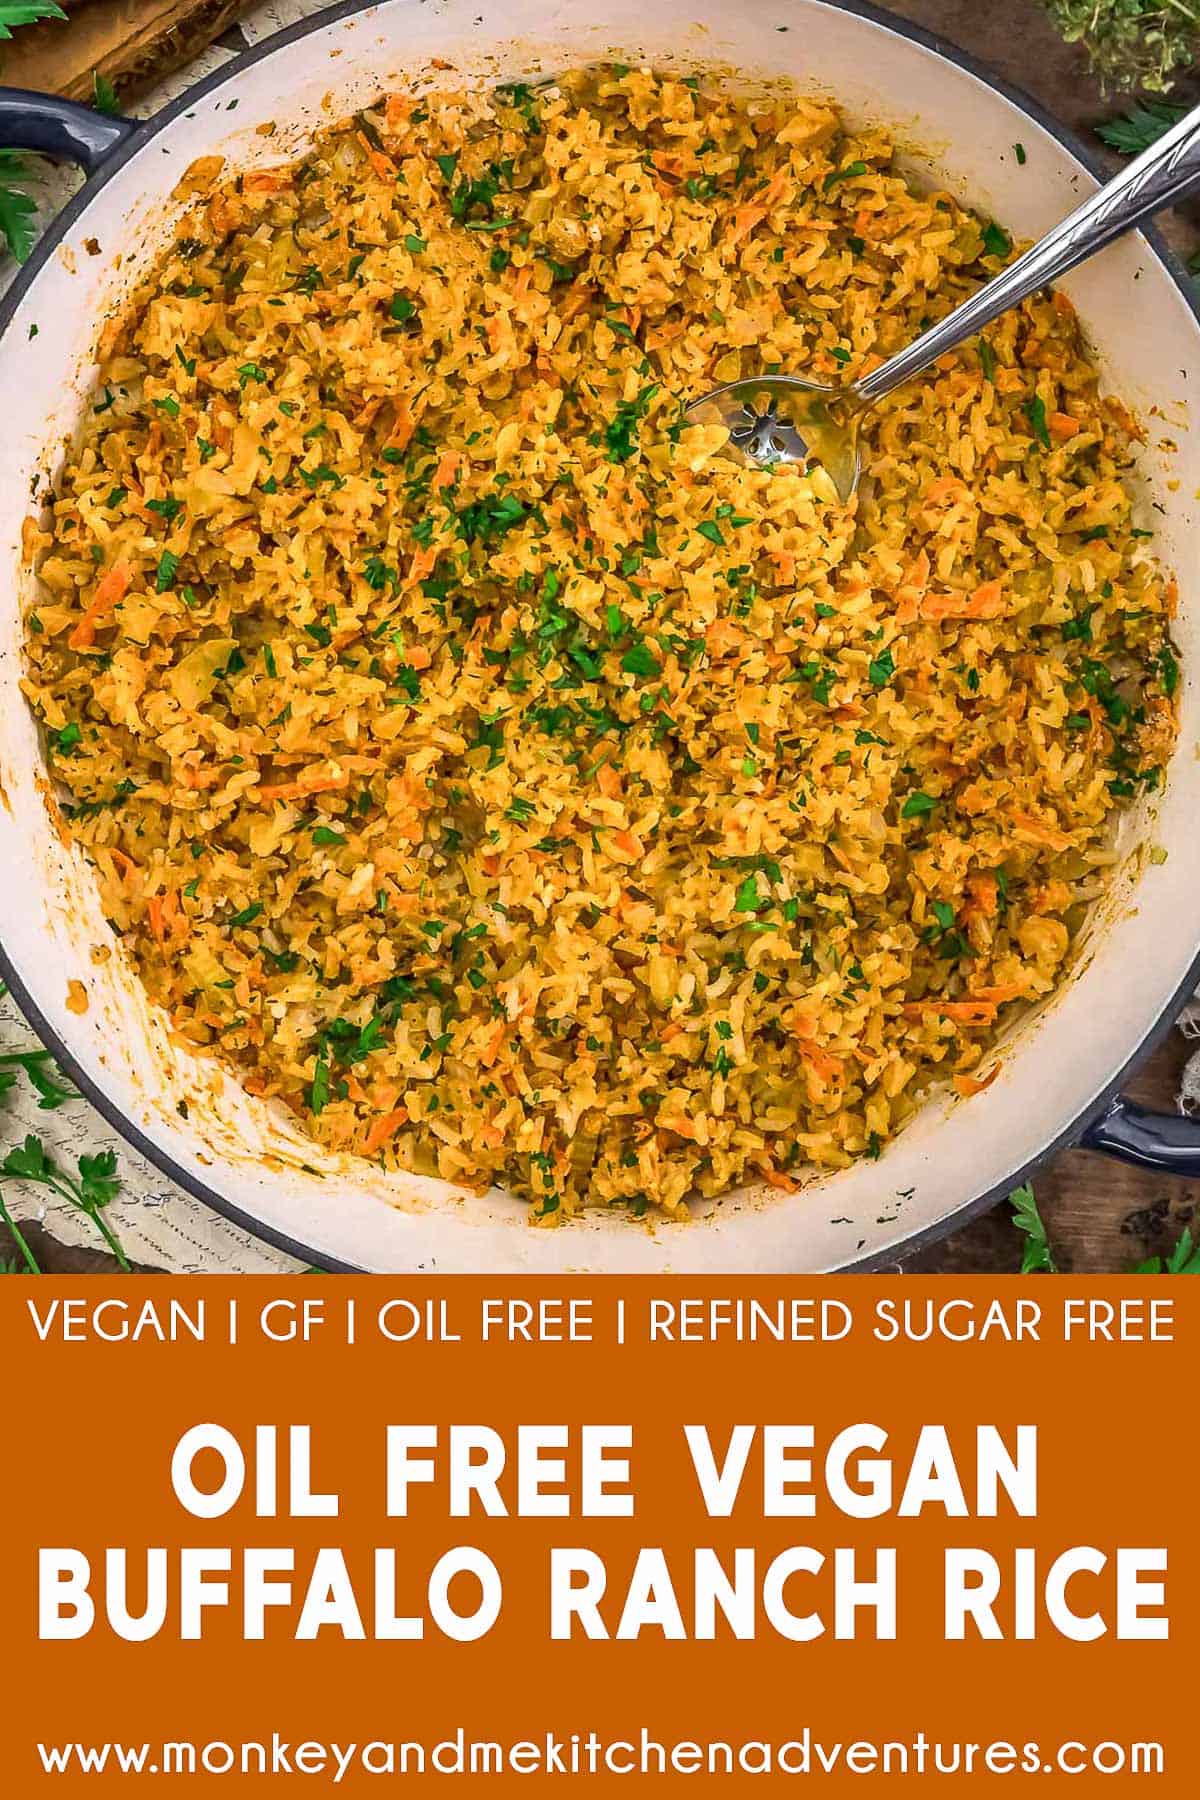 Oil-Free Vegan Buffalo Ranch Rice with text description